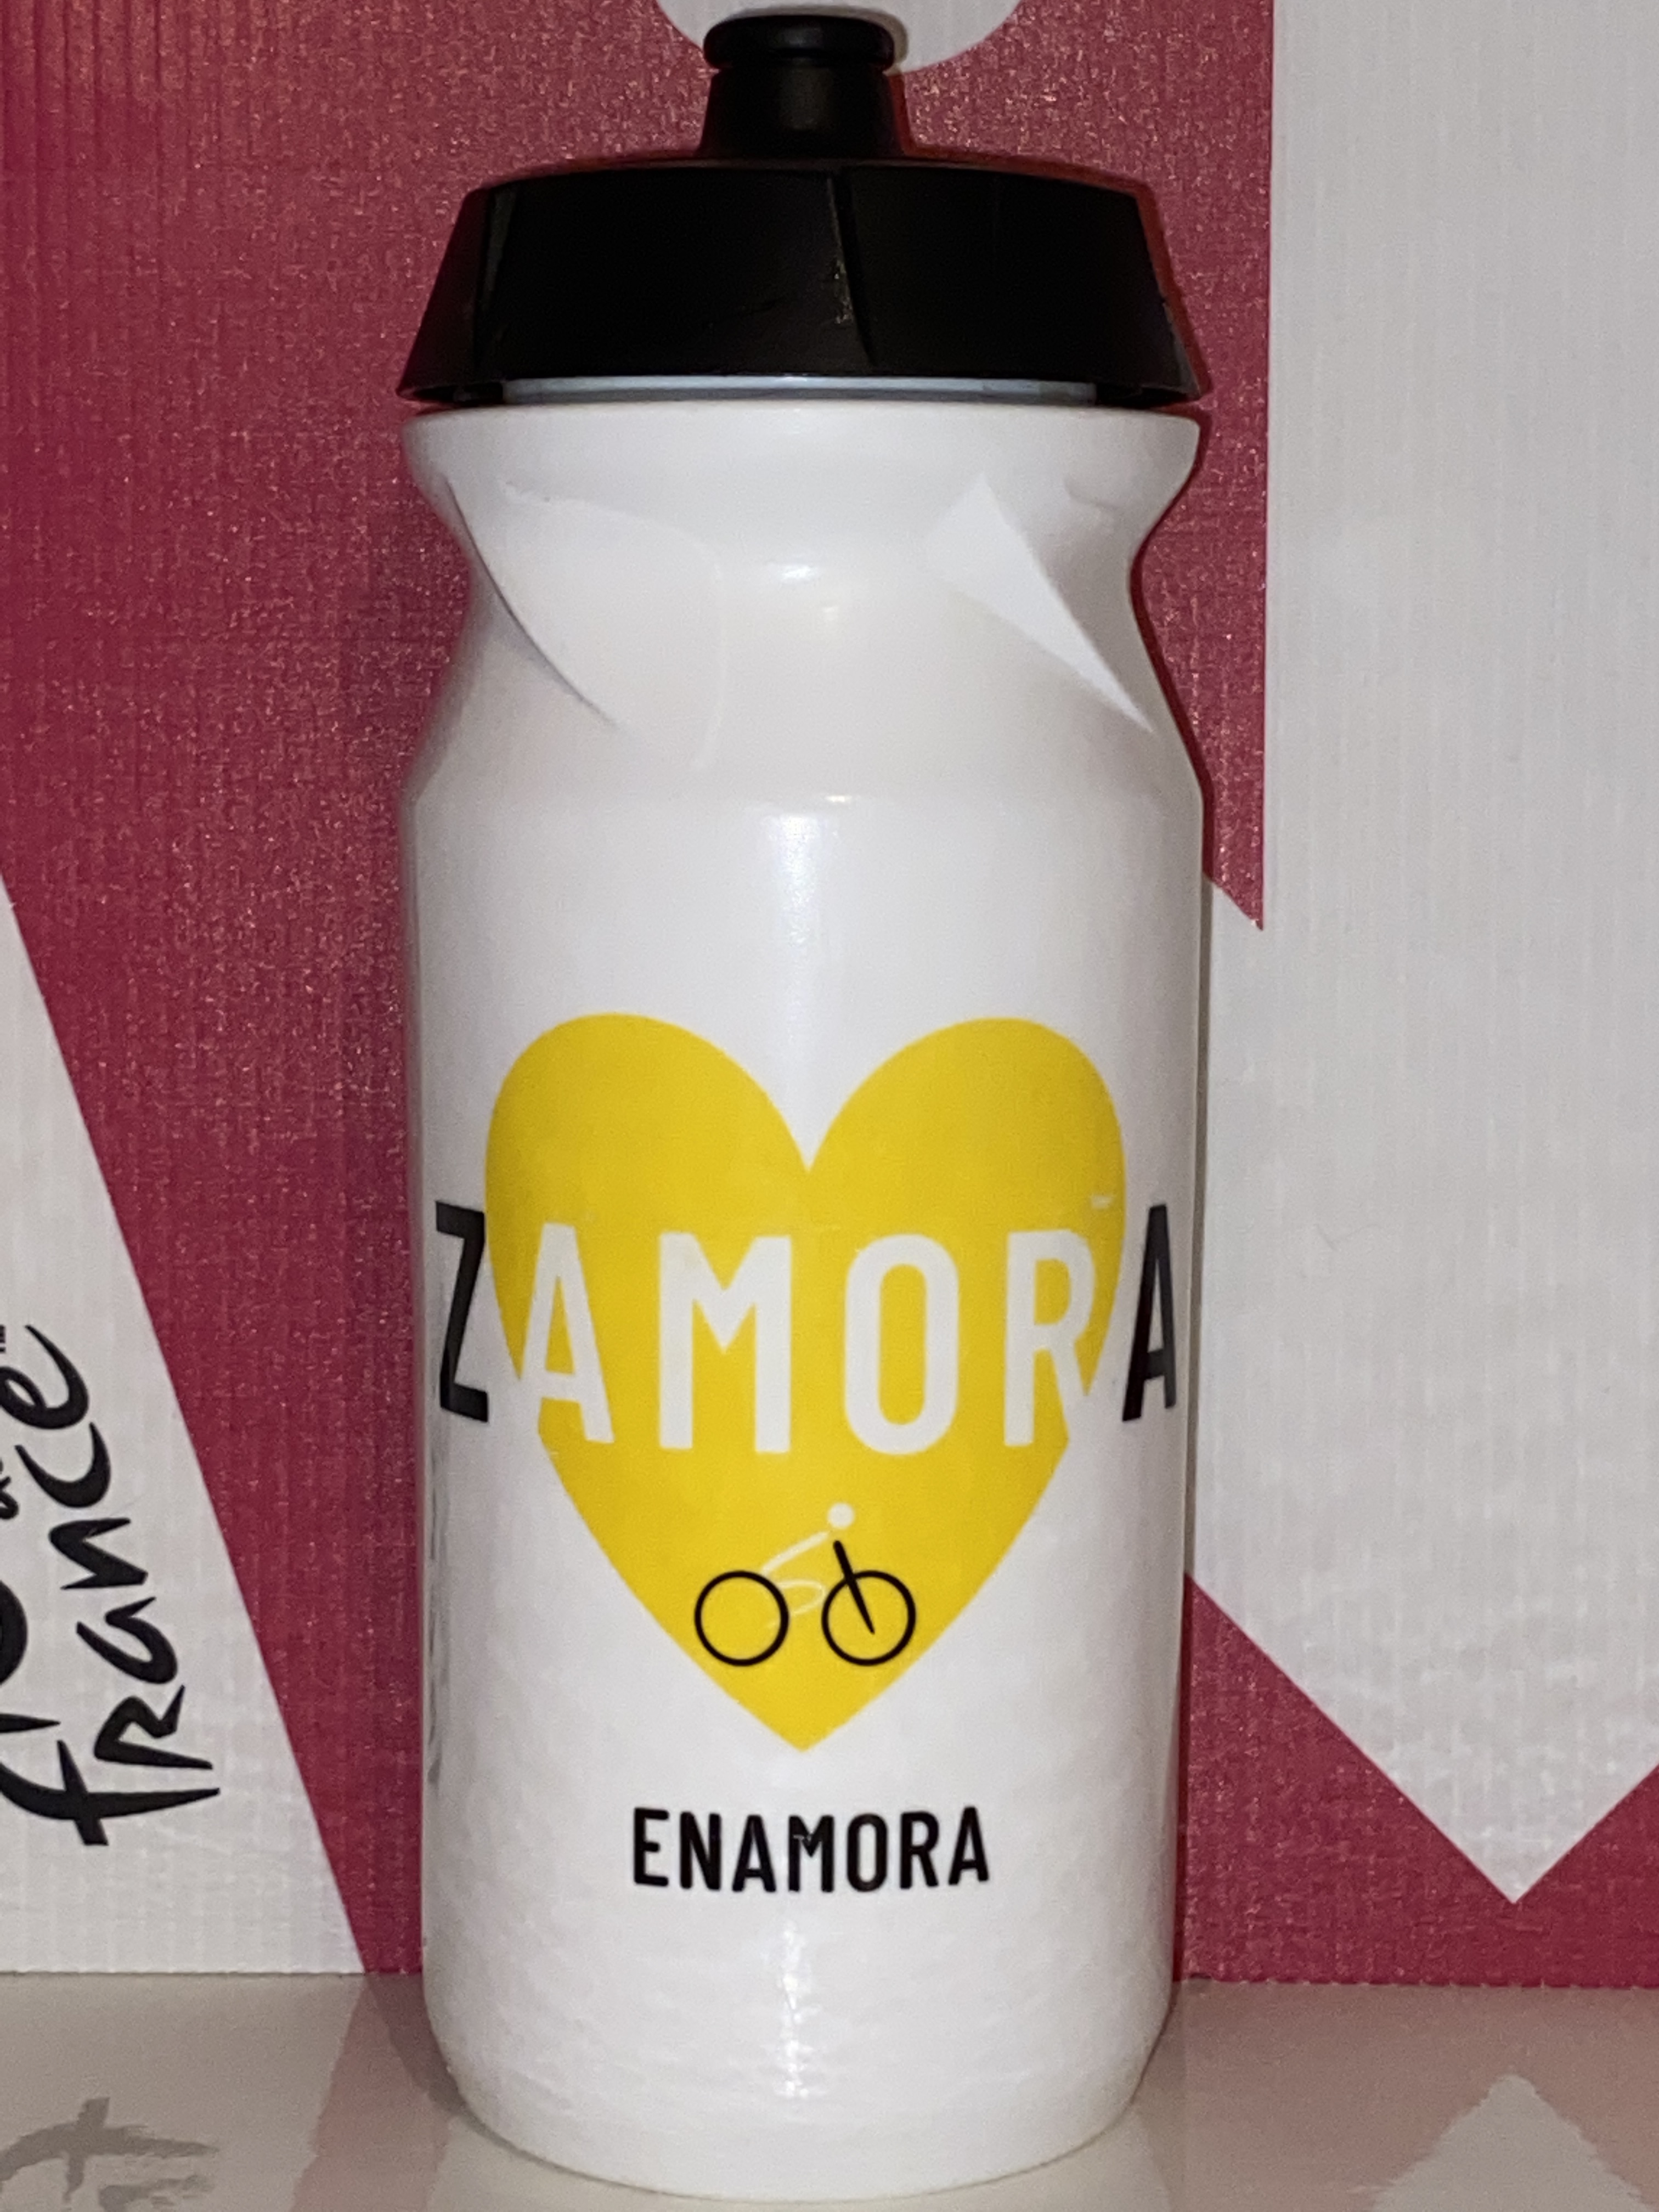 Zéfal - Zamora Enamora cycling team - 2023